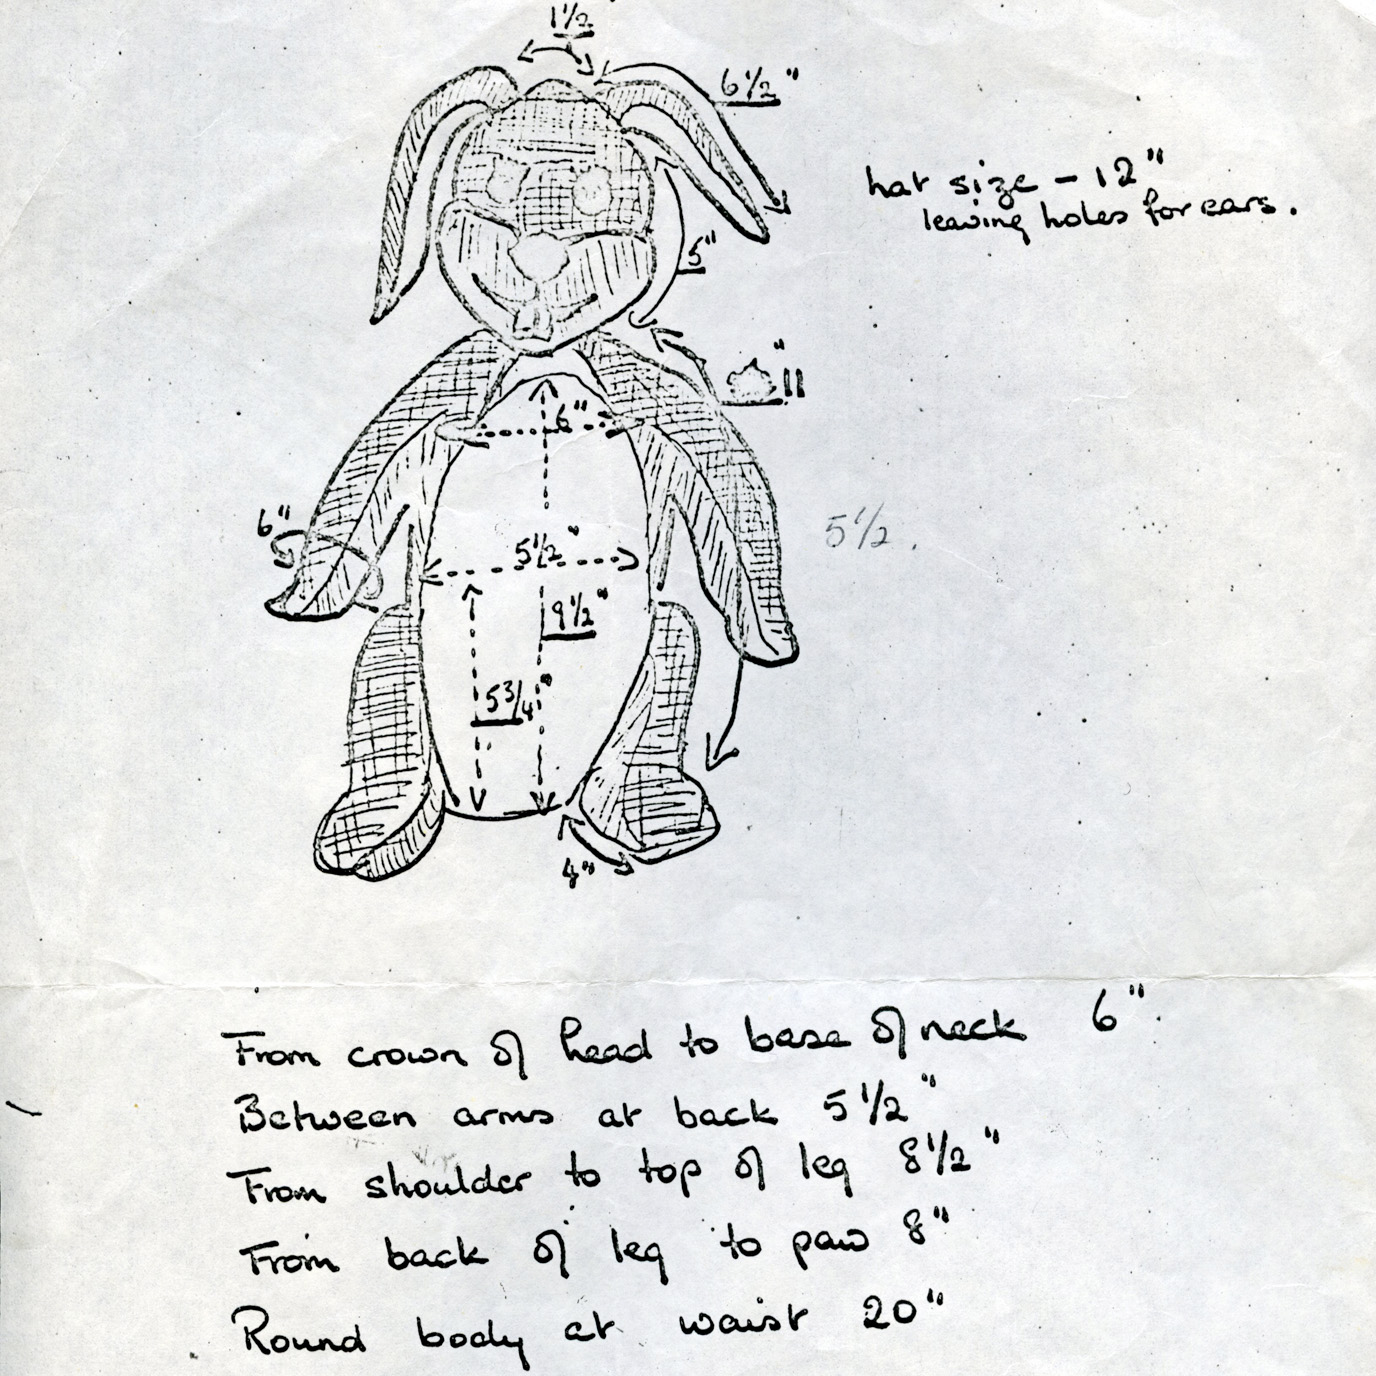 One of the original design drawings for Gus Honeybun